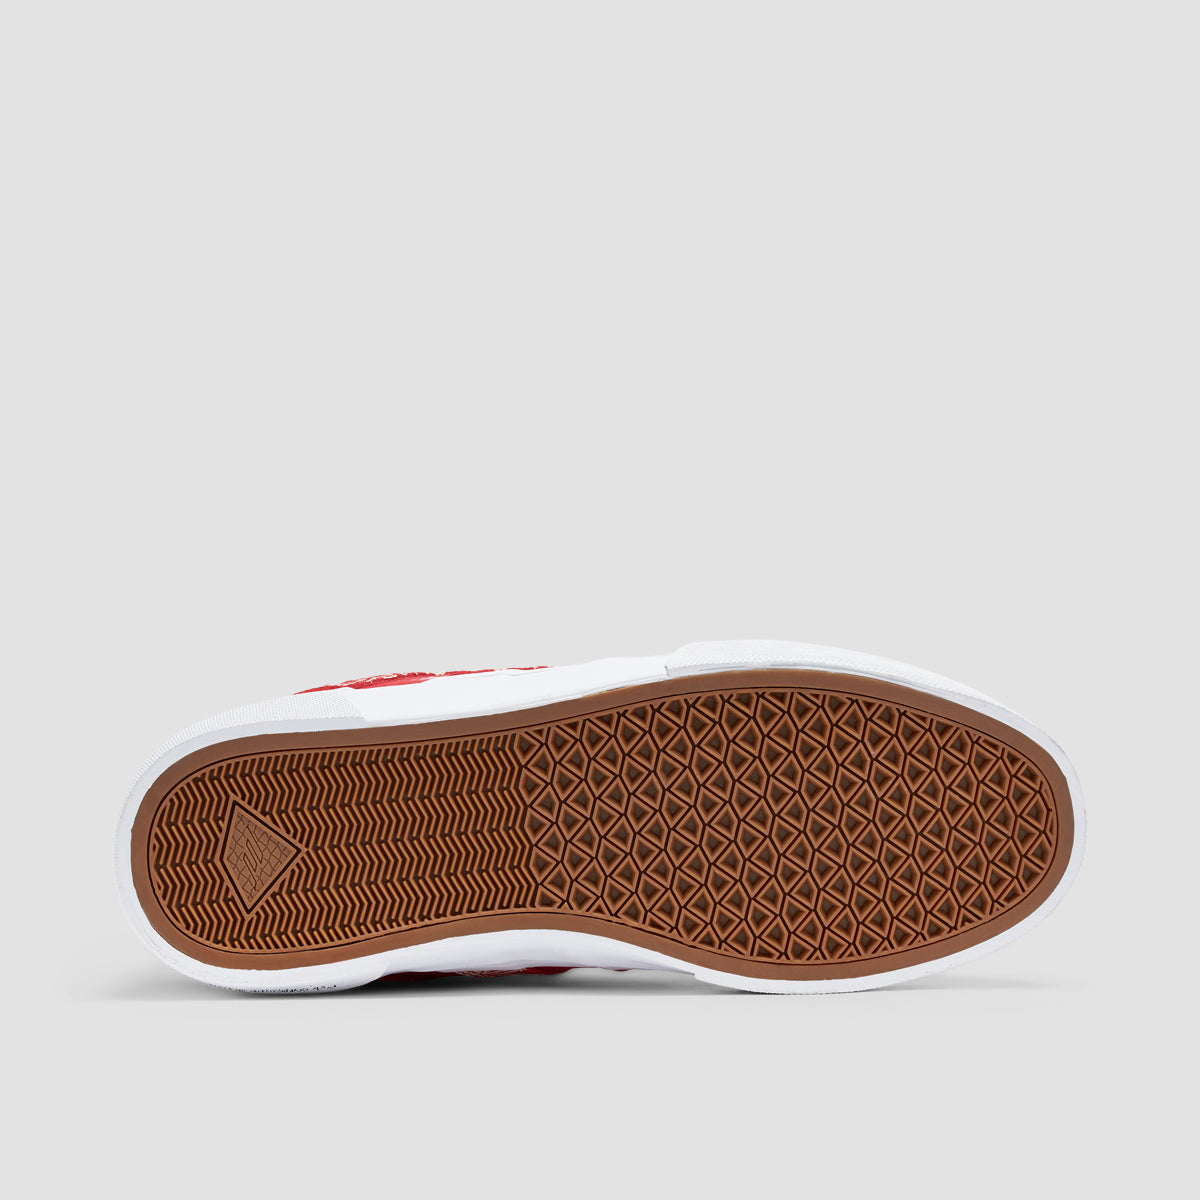 Emerica Tilt G6 Vulc Shoes Red/White